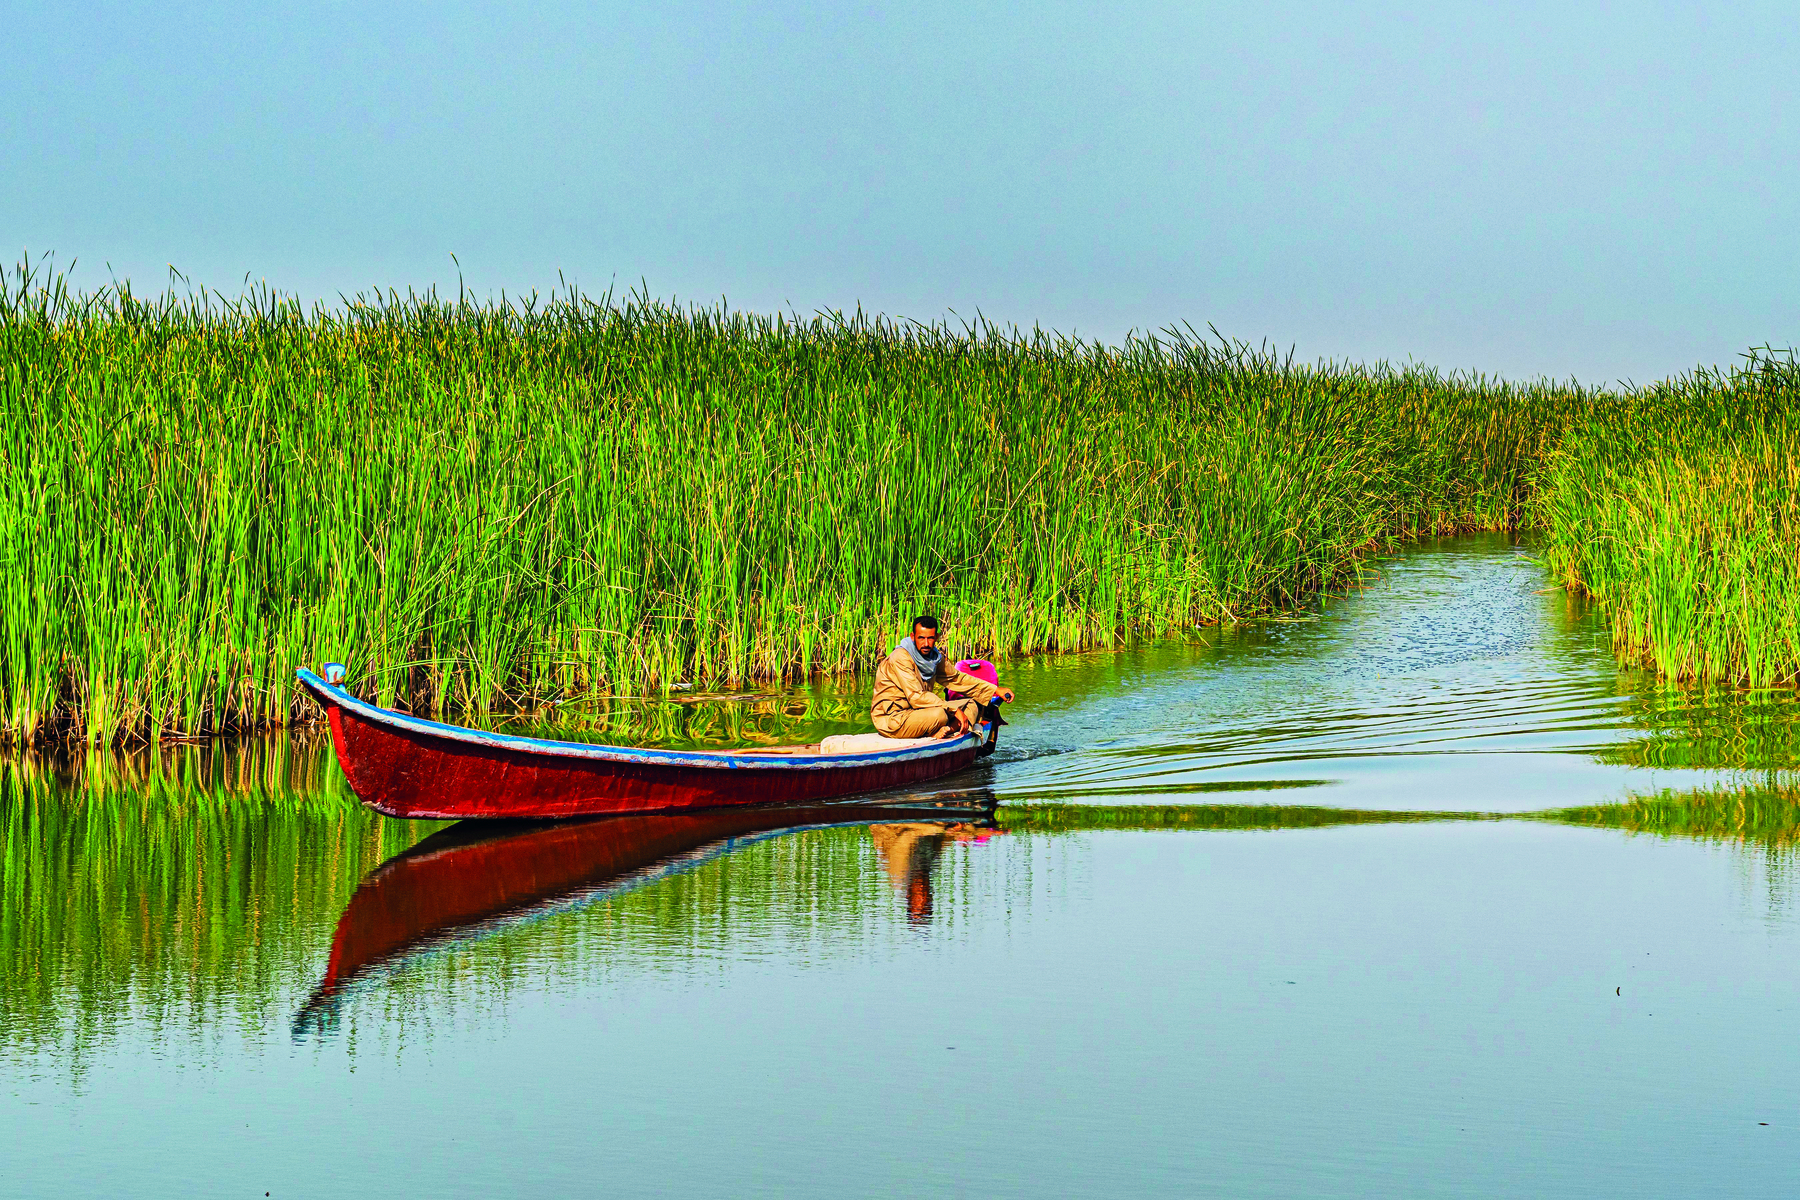 Fotografia. Vista de um homem sentado sobre uma canoa vermelha flutuando em um rio cercado por vegetação densa.